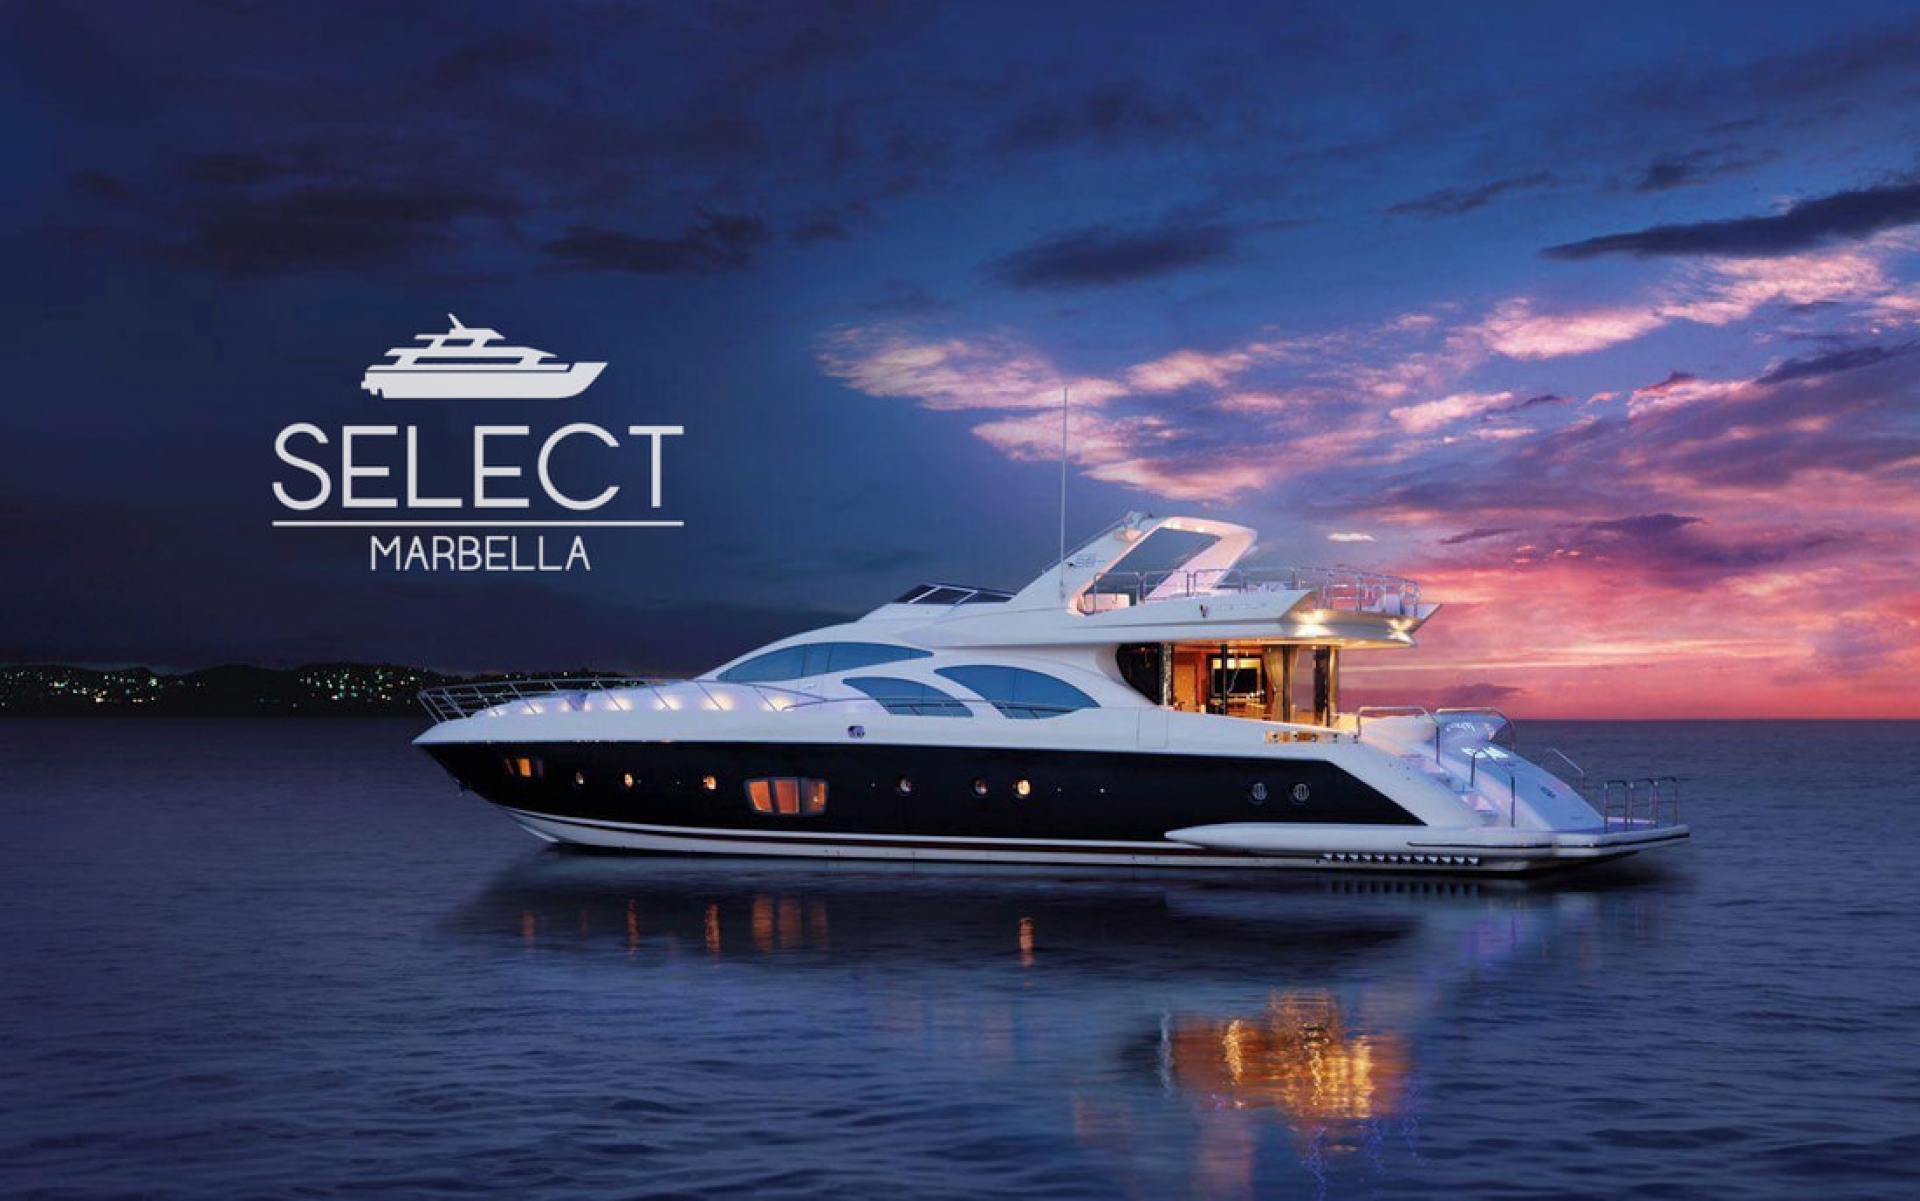 Select Marbella Yachts